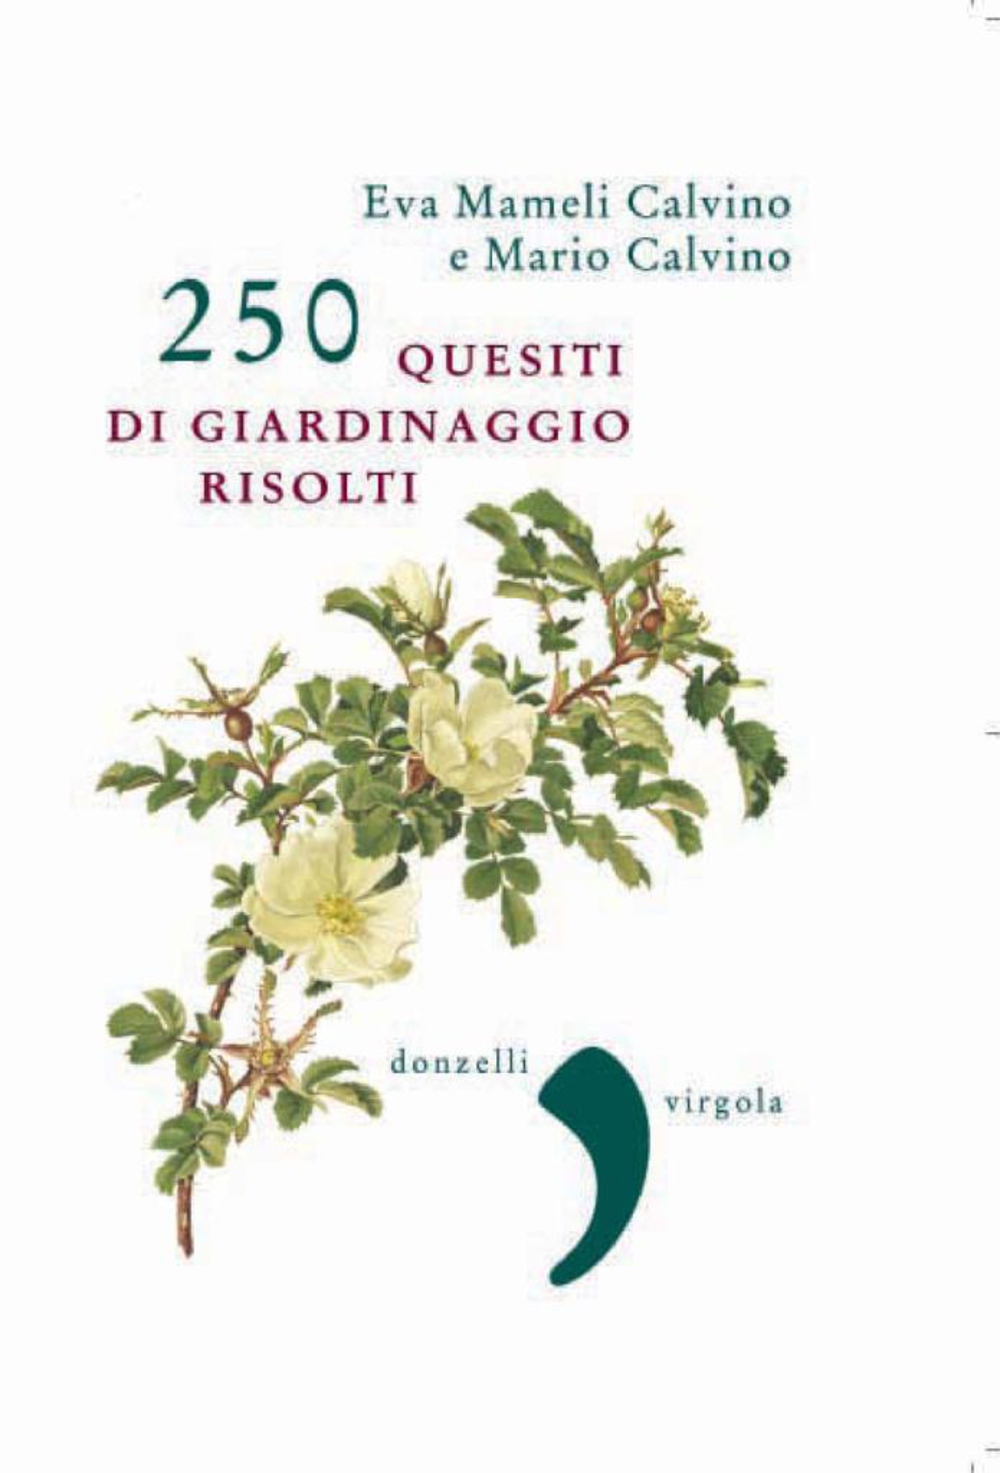 E-book, 250 quesiti di giardinaggio risolti, Calvino, Eva Mameli, Donzelli